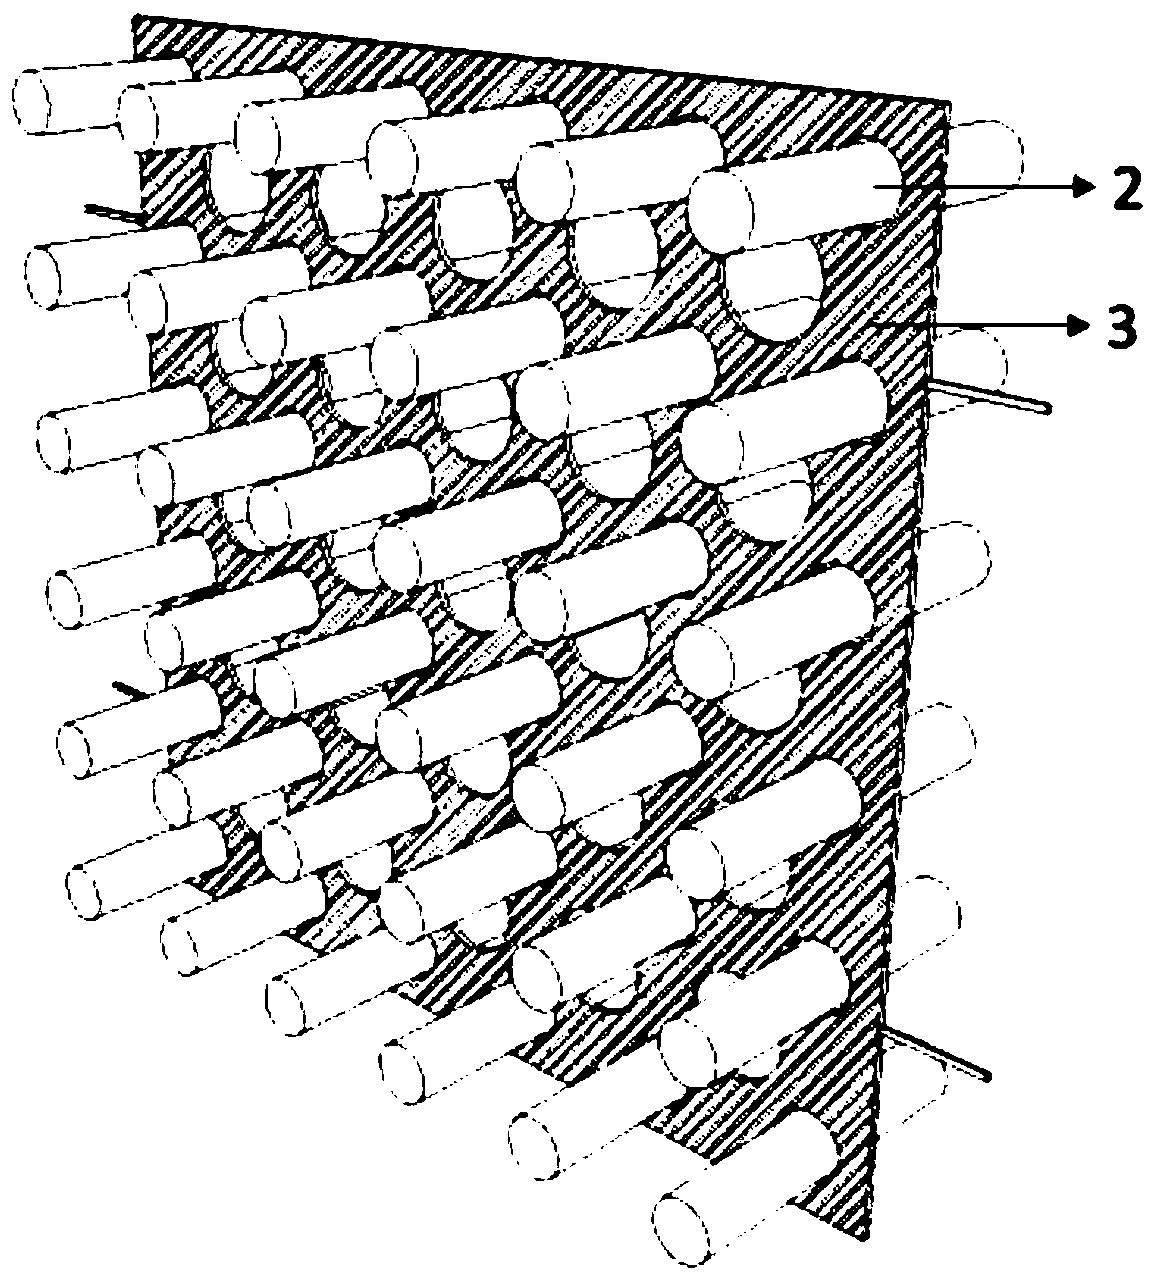 Rapid forming method of semi-transparent concrete plates